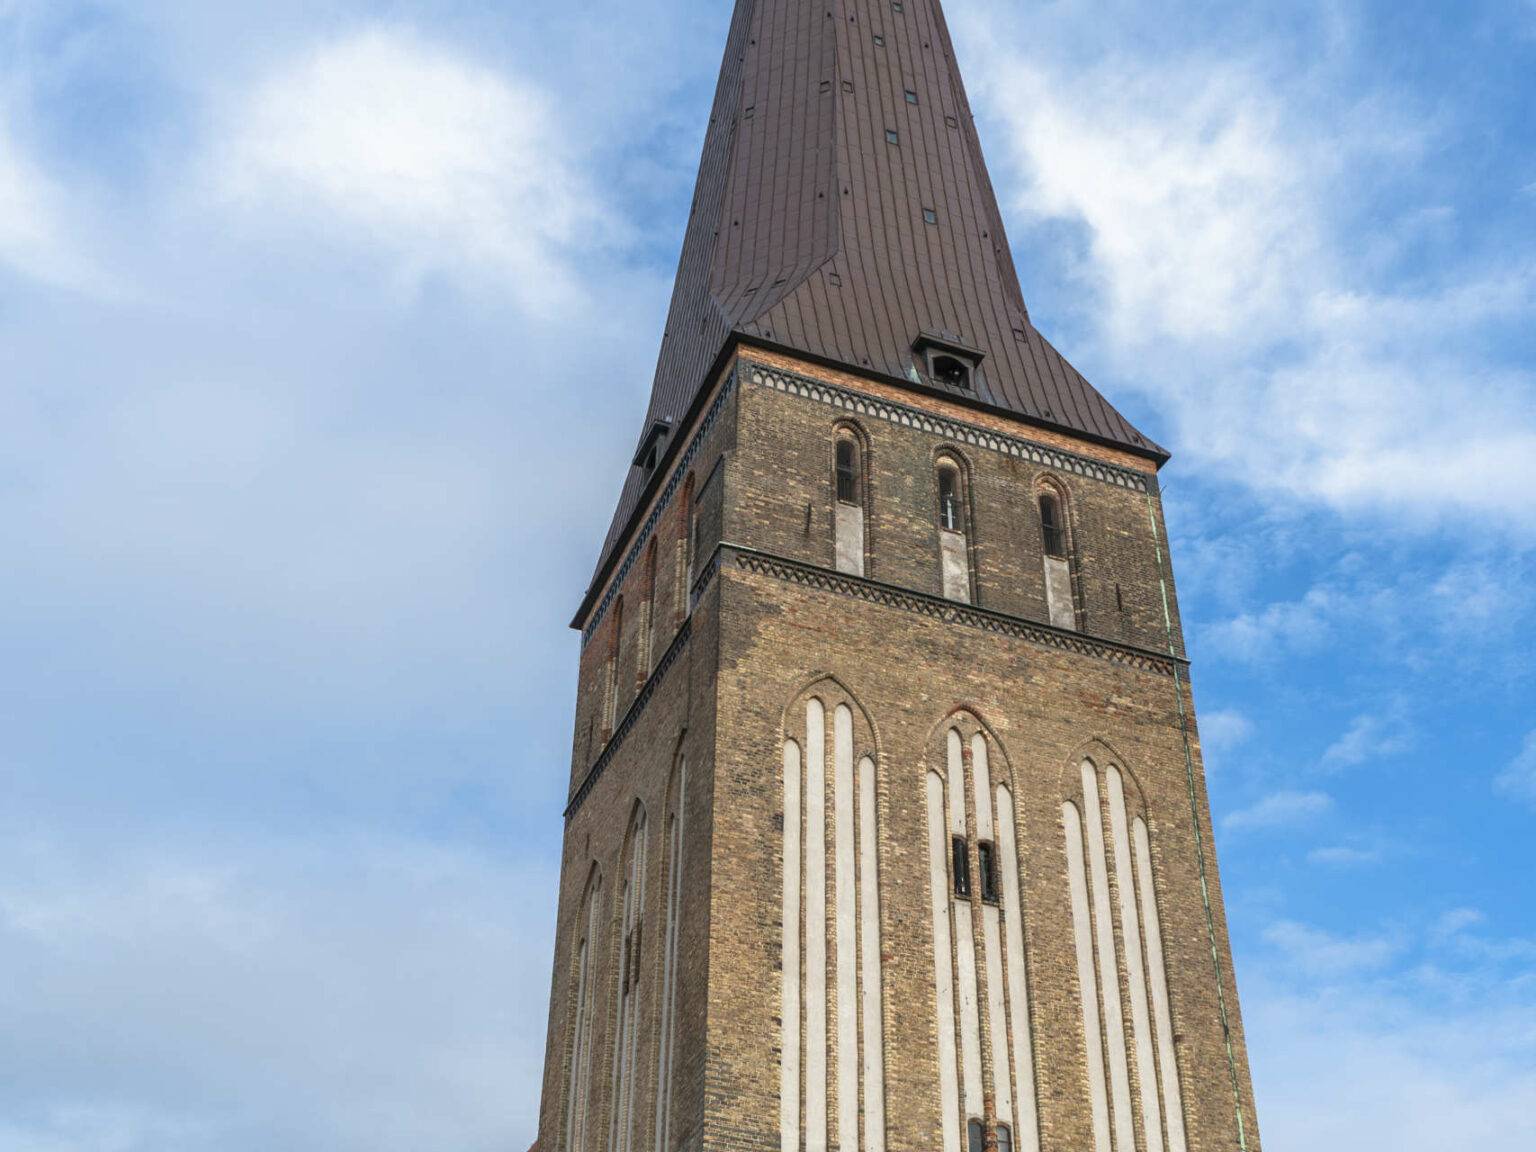 Die Rostocker Petrikirche erhebt sich in den strahlend blauen Himmel mit weißen Wolken, die braunen Backsteine sieht man aus der Froschperspektive.